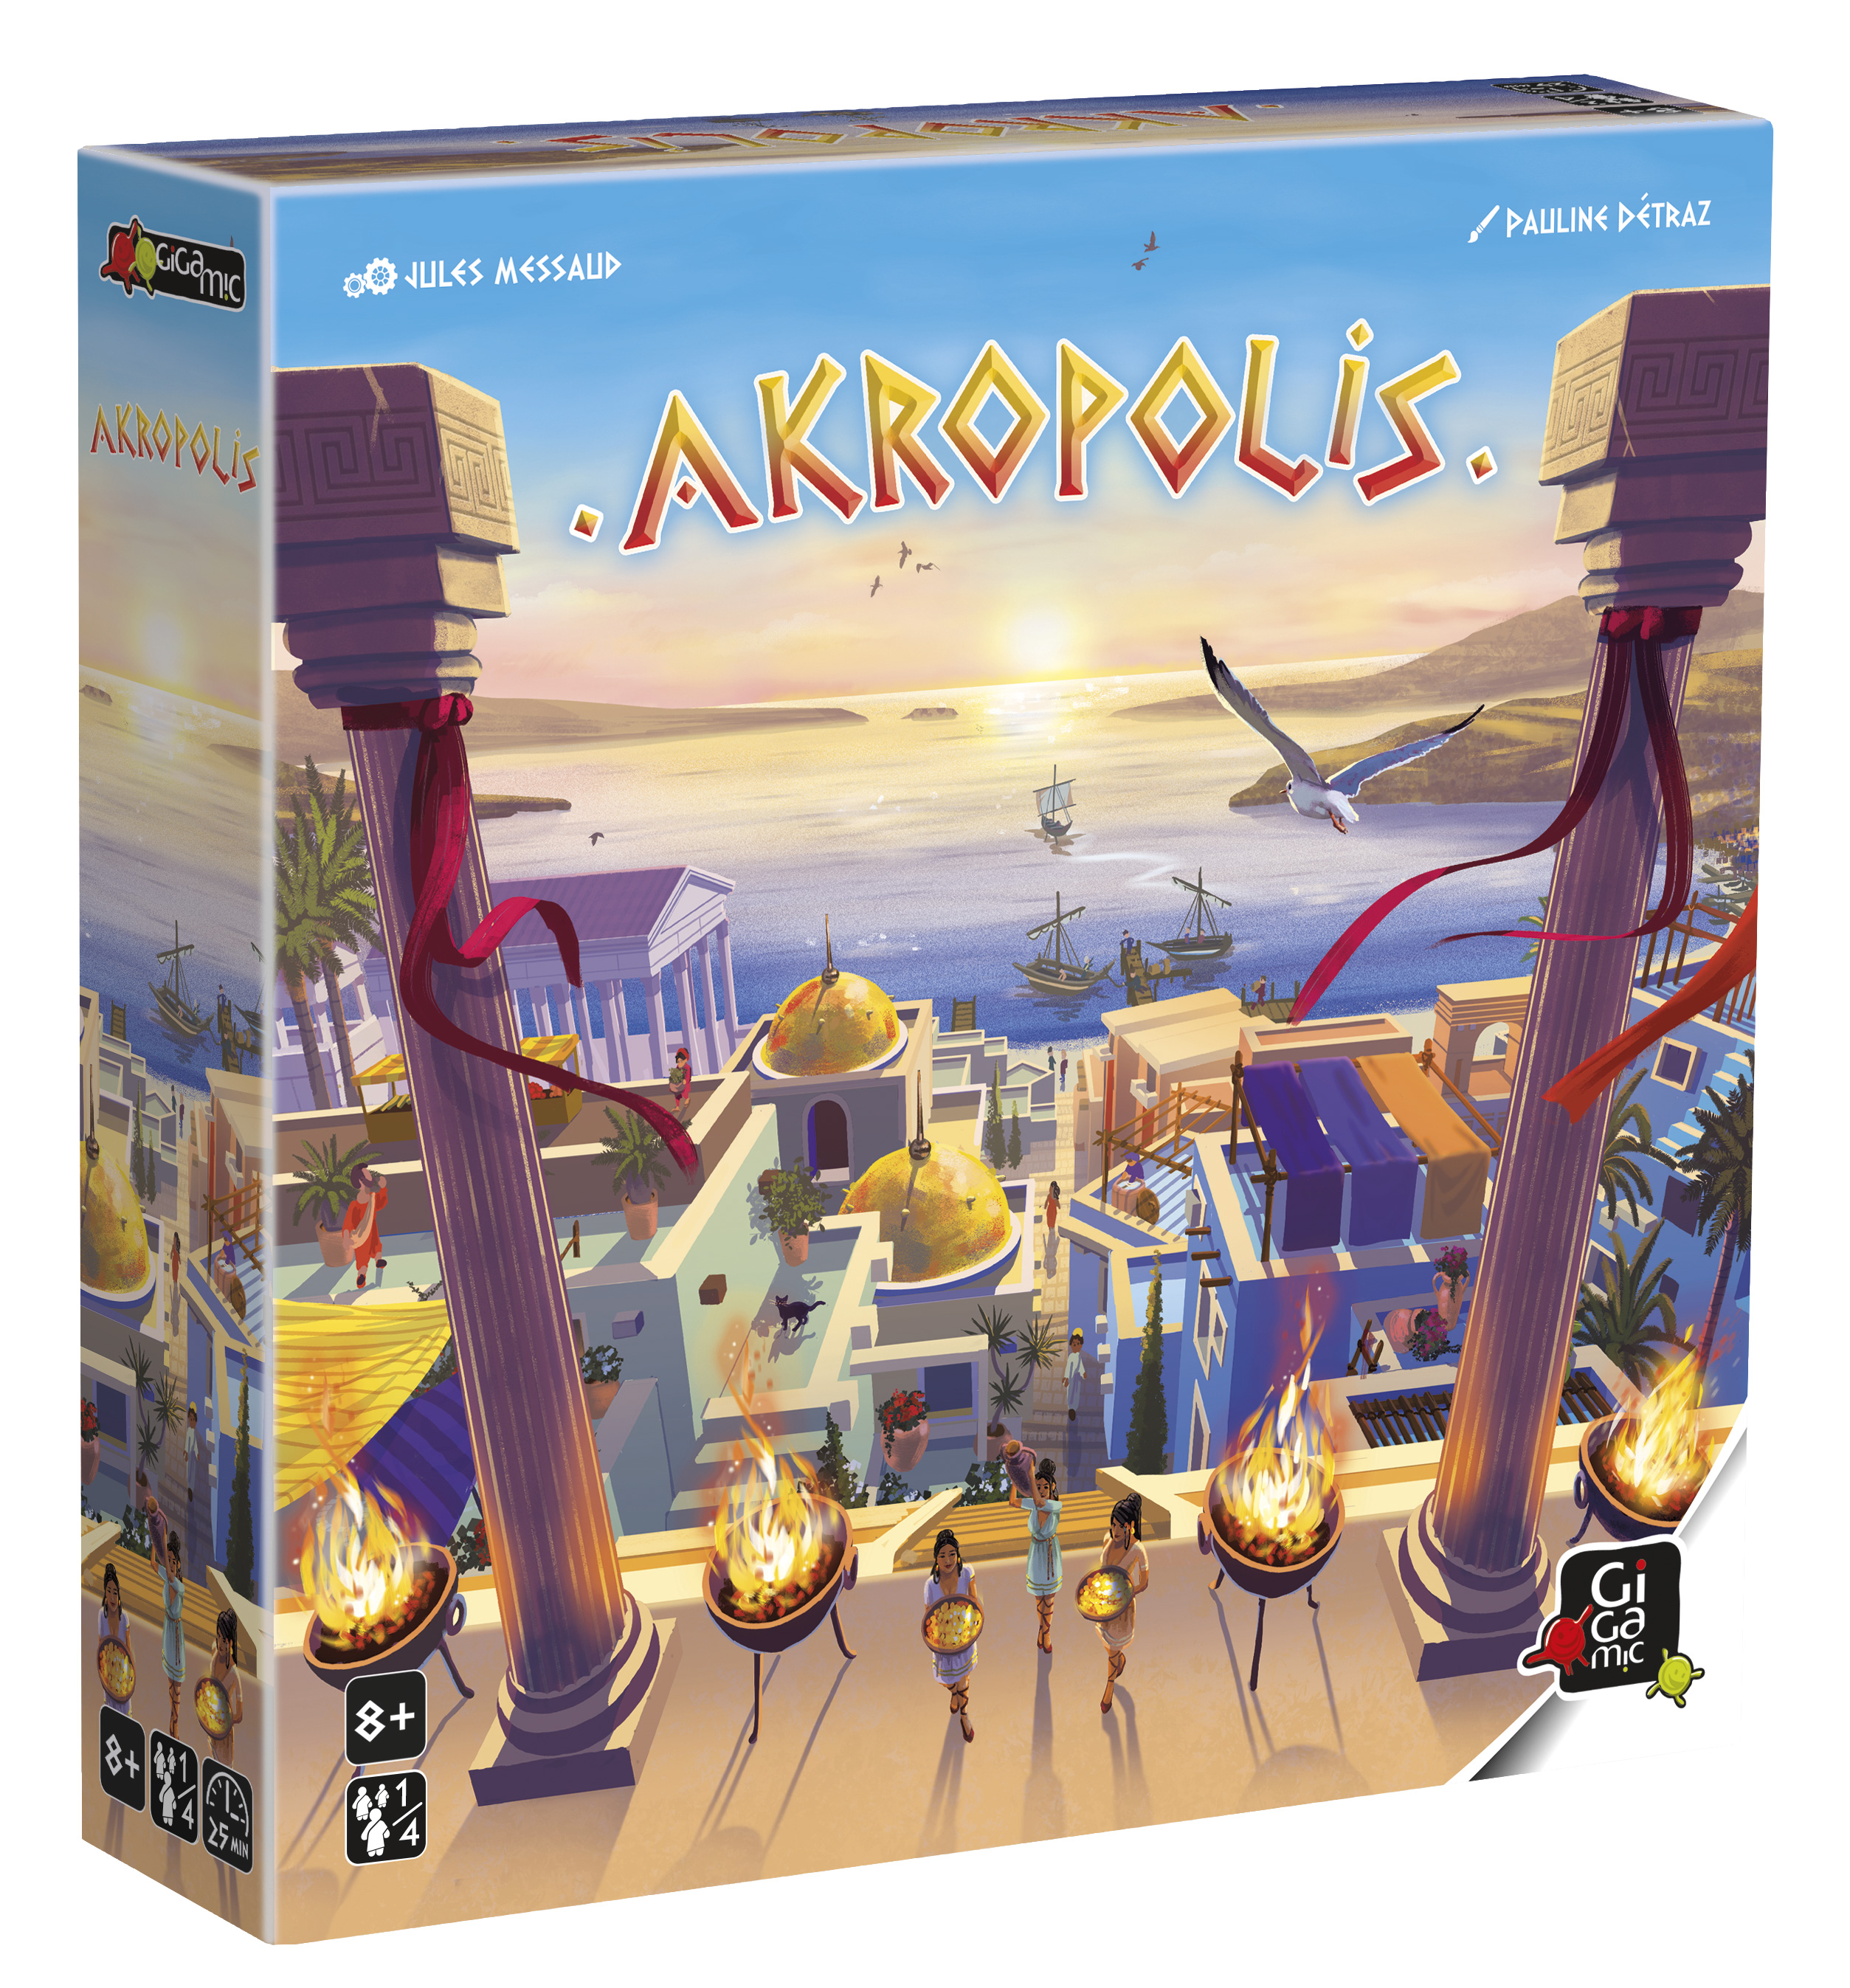 Akropolis, meilleur jeu de société Gigamic